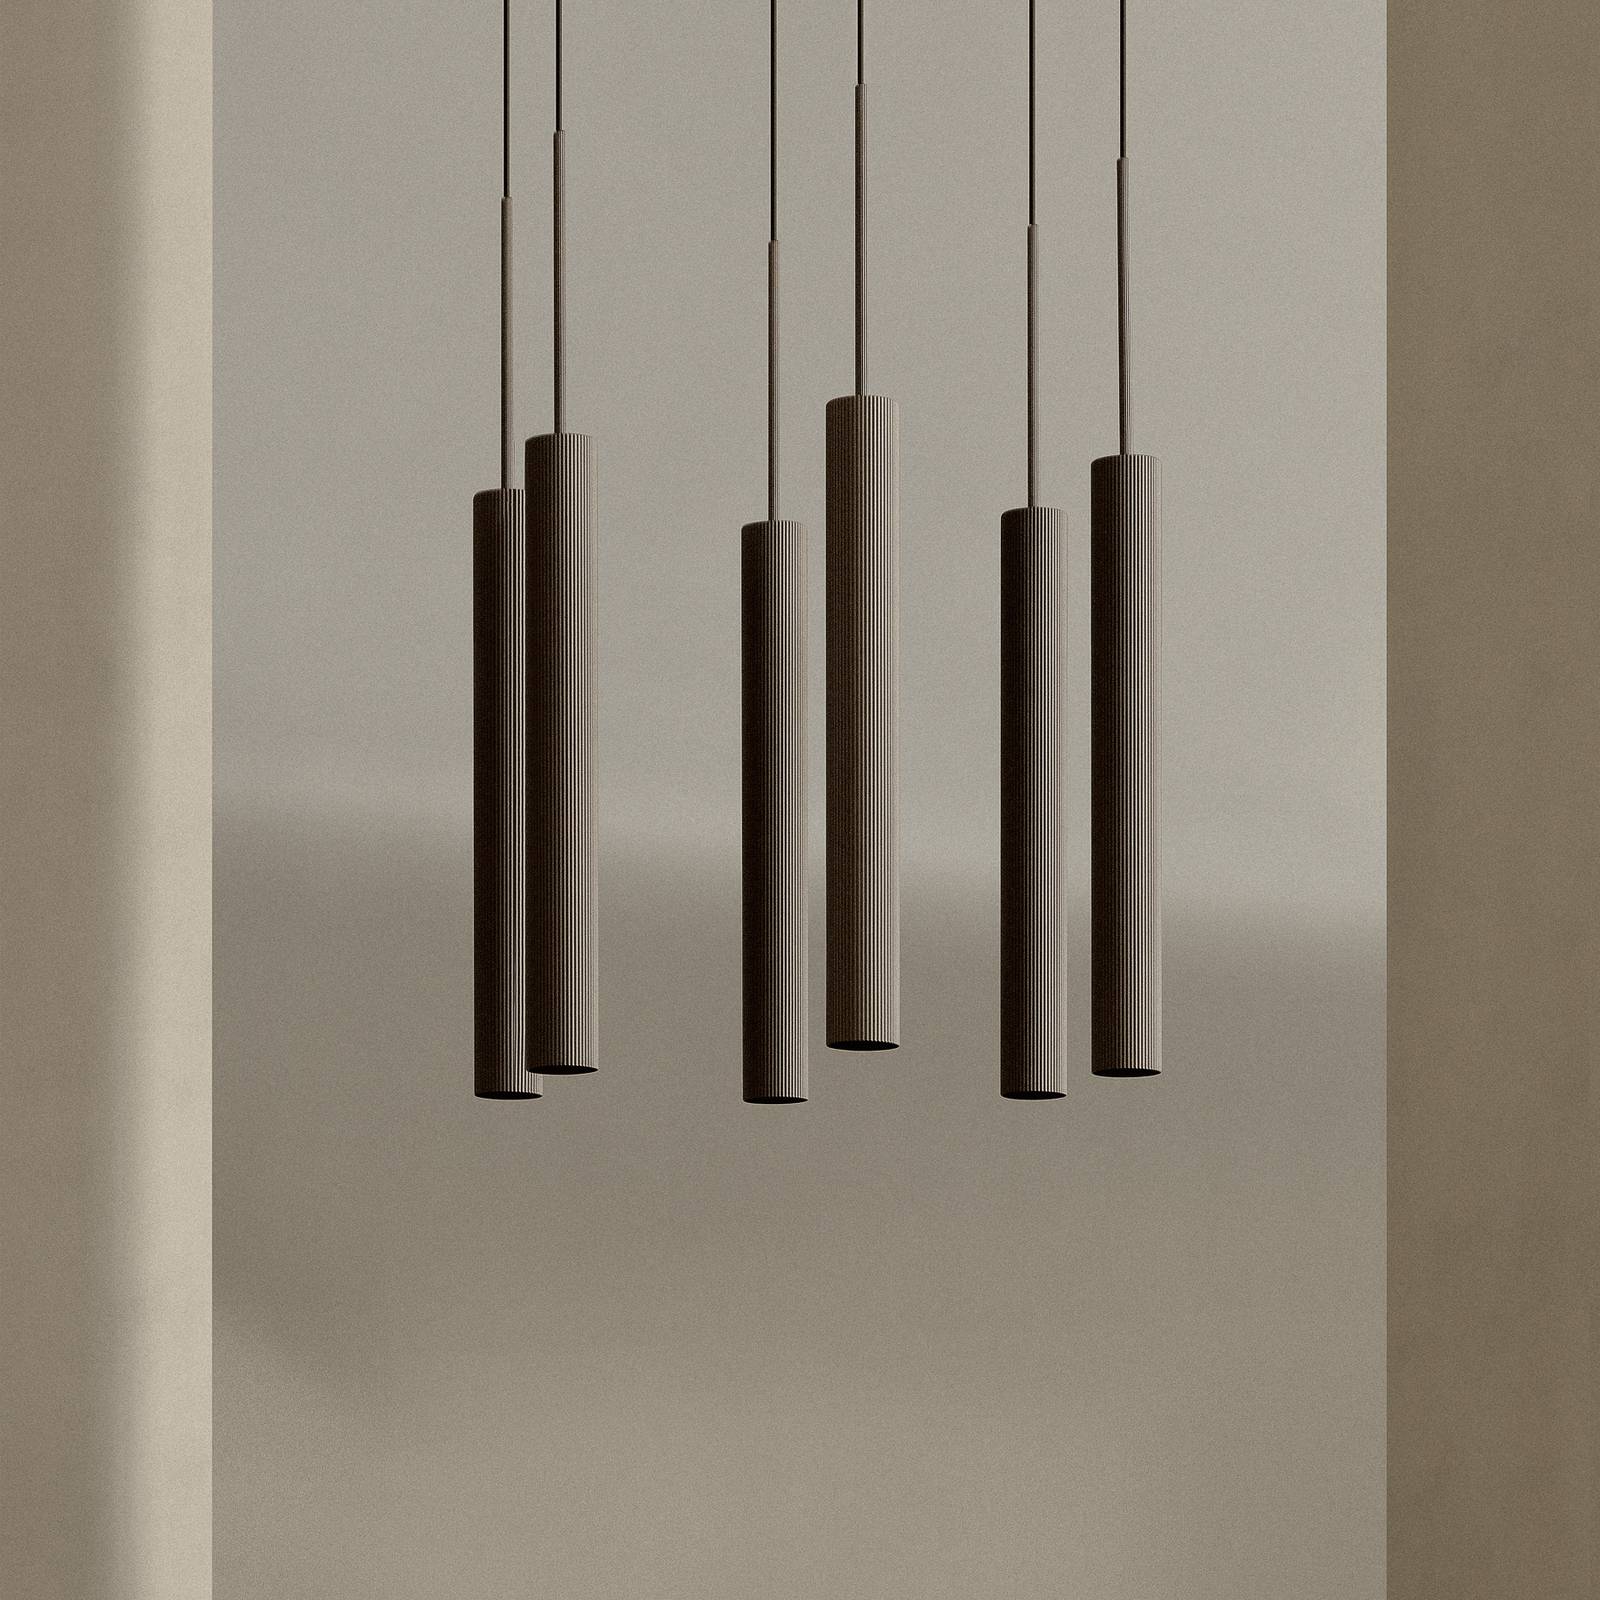 Audo copenhagen audo függeszték lámpa tubulaire, bronz, alumínium, 6 lámpás, gyűrűs, gyűrűs